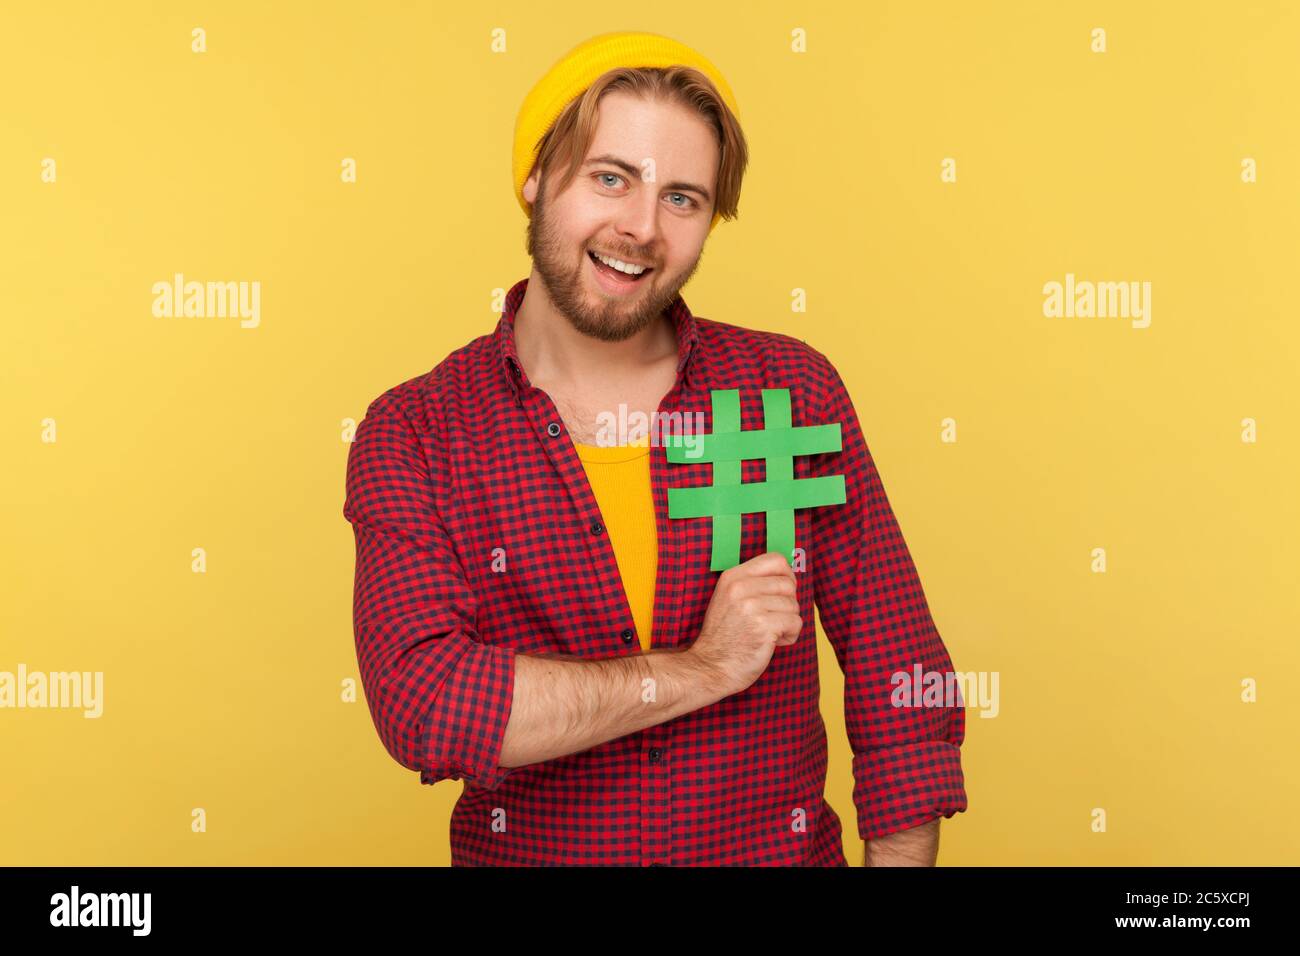 Hashtag, Internet-Trends. Positive Hipster Kerl in karierten Hemd lächelnd und halten Hash-Zeichen auf seiner Brust, Symbol der viralen Nachricht sozialen Netzwerk. Stockfoto